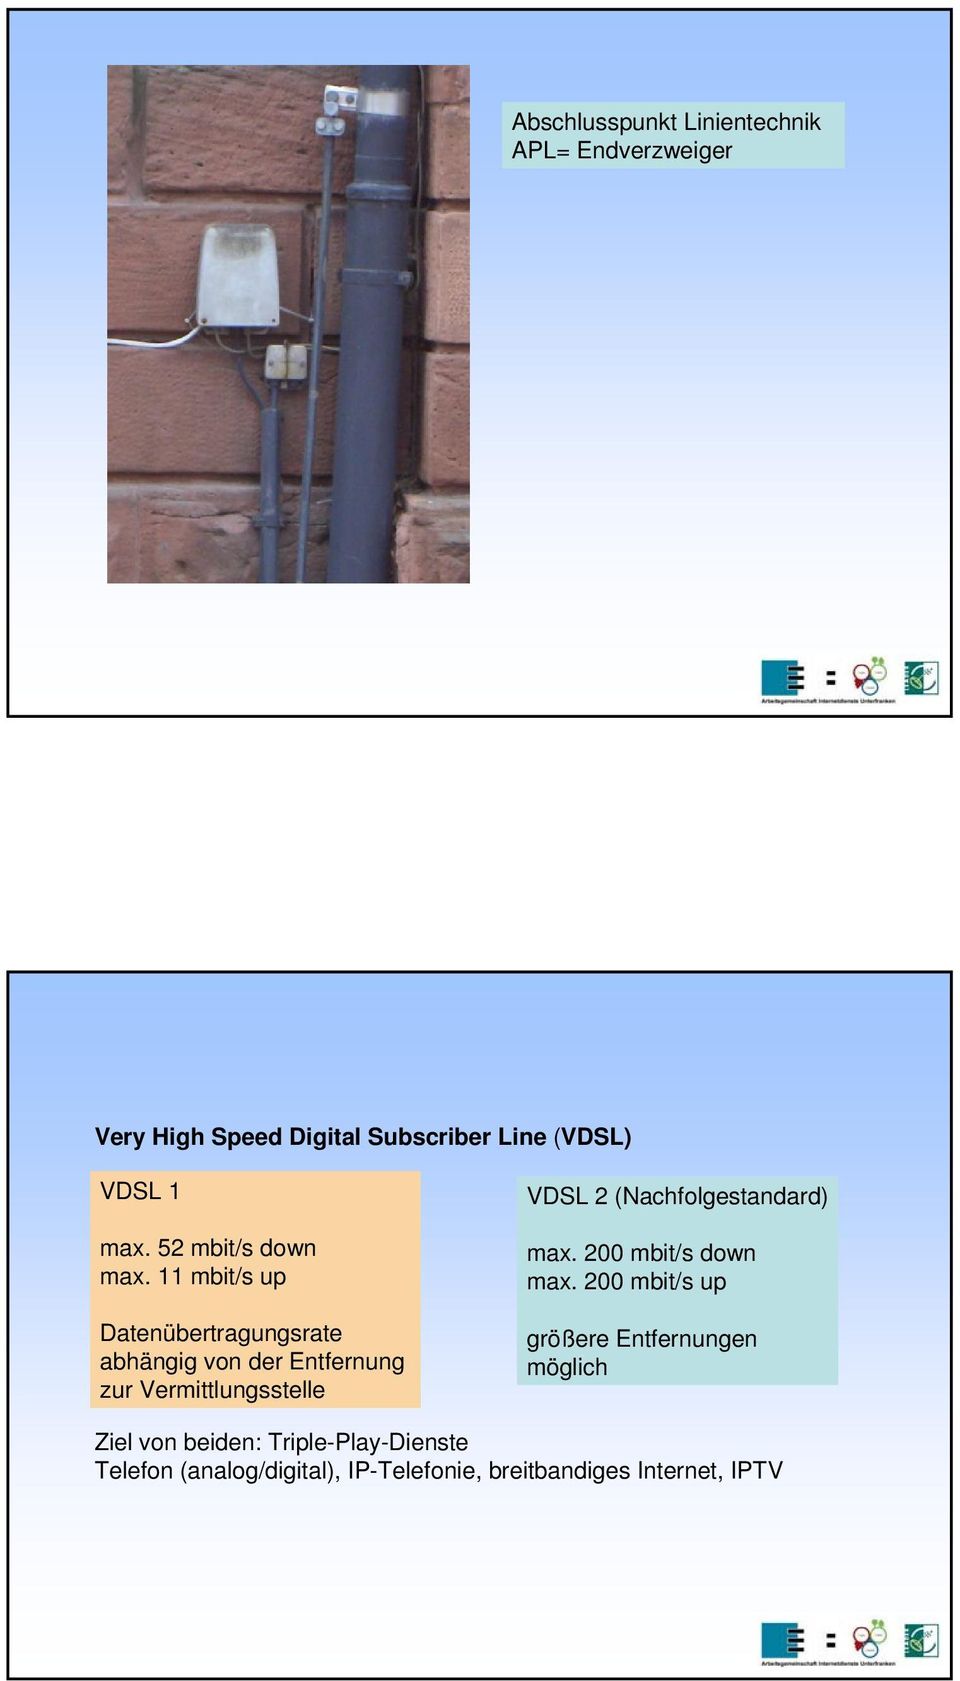 11 mbit/s up Datenübertragungsrate abhängig von der Entfernung zur Vermittlungsstelle VDSL 2